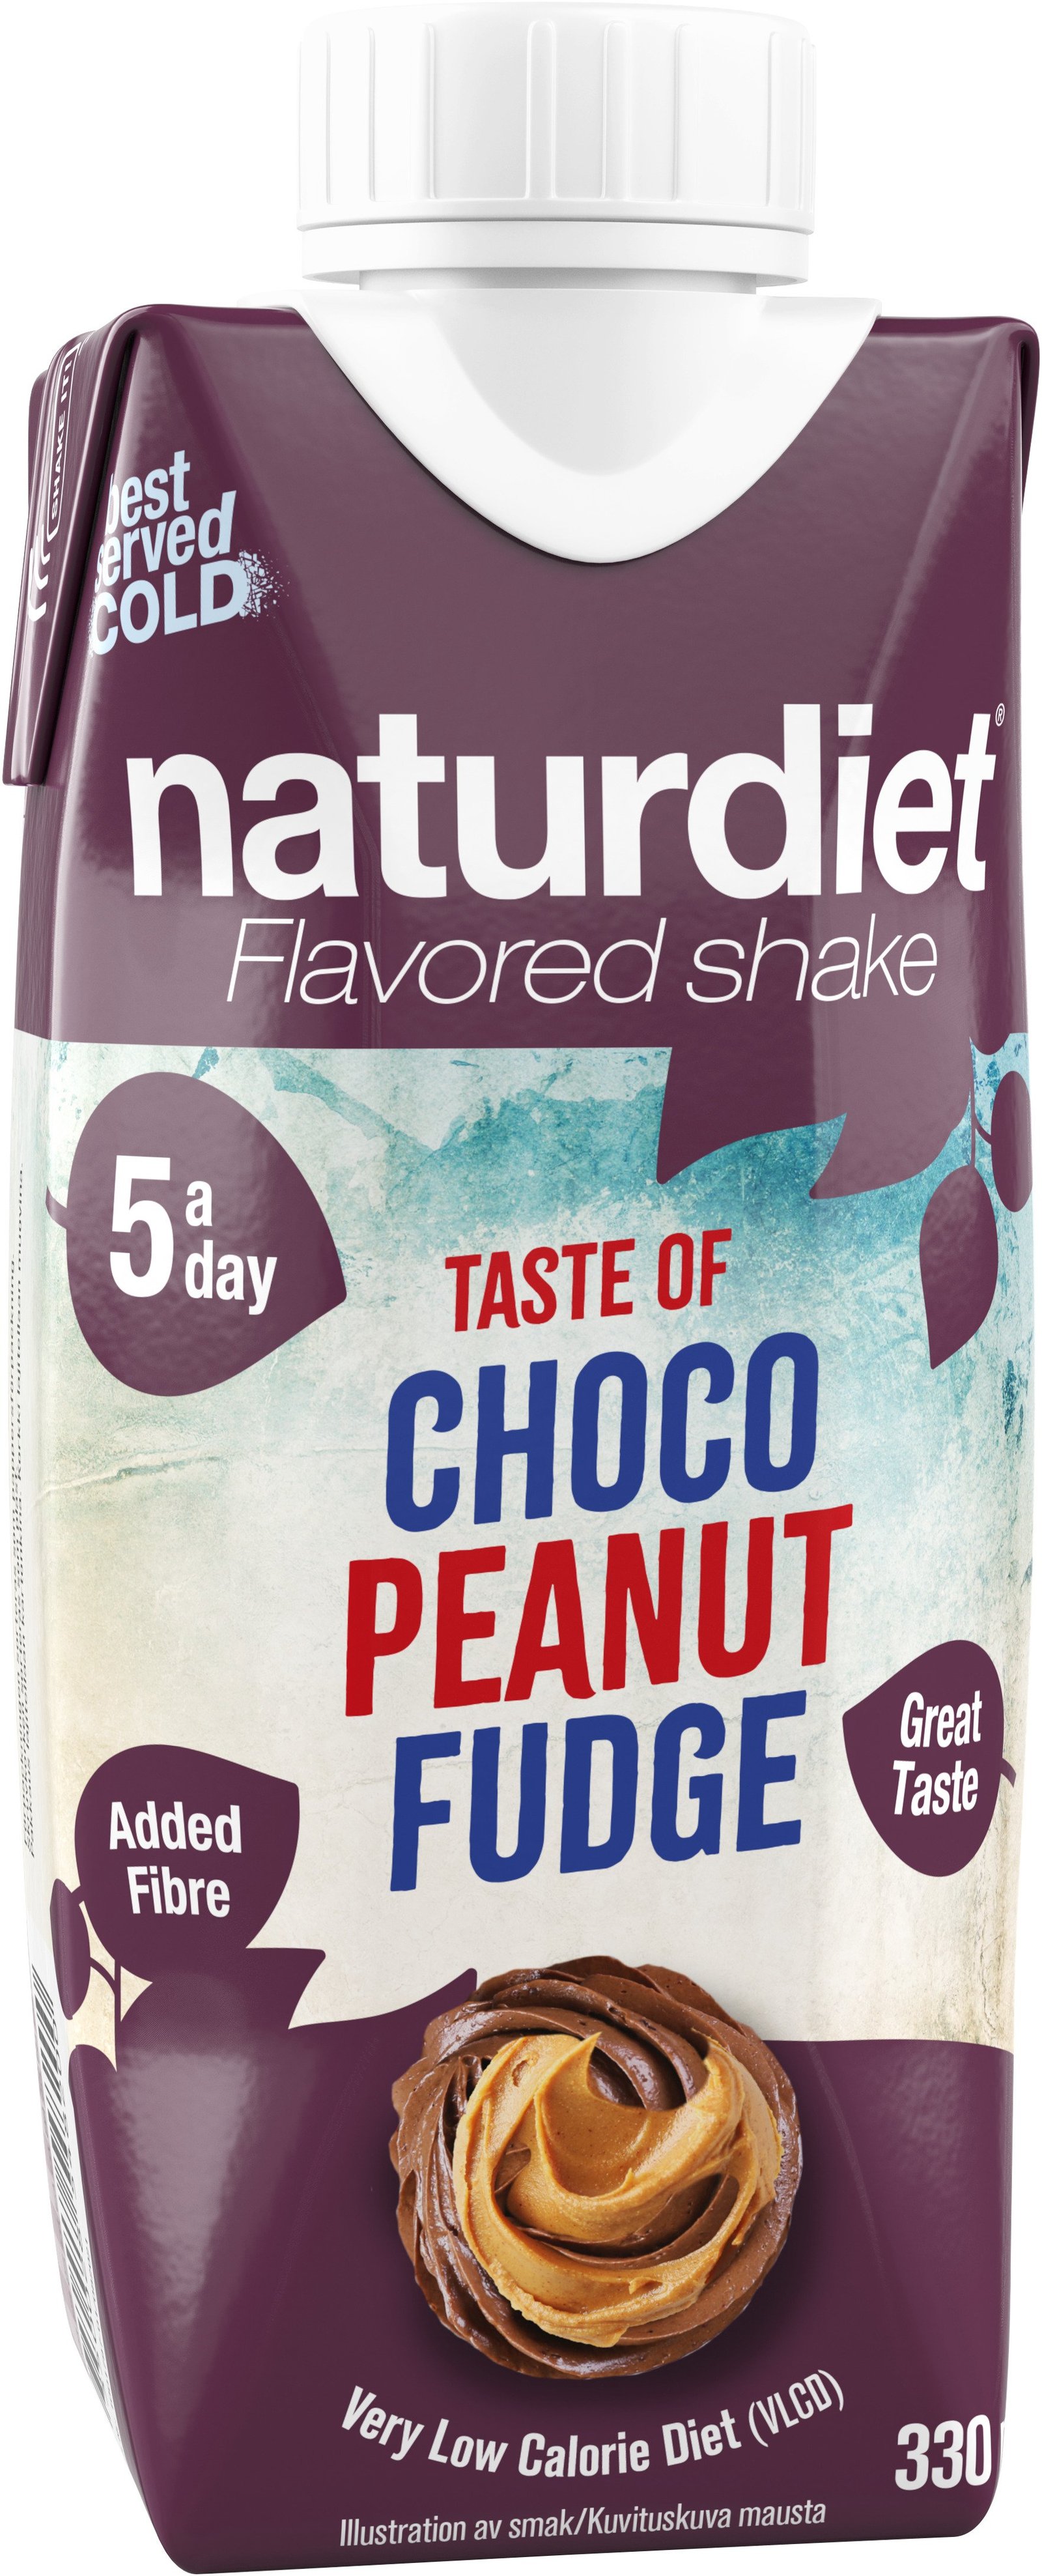 Naturdiet Choco Peanut Fudge 330 ml